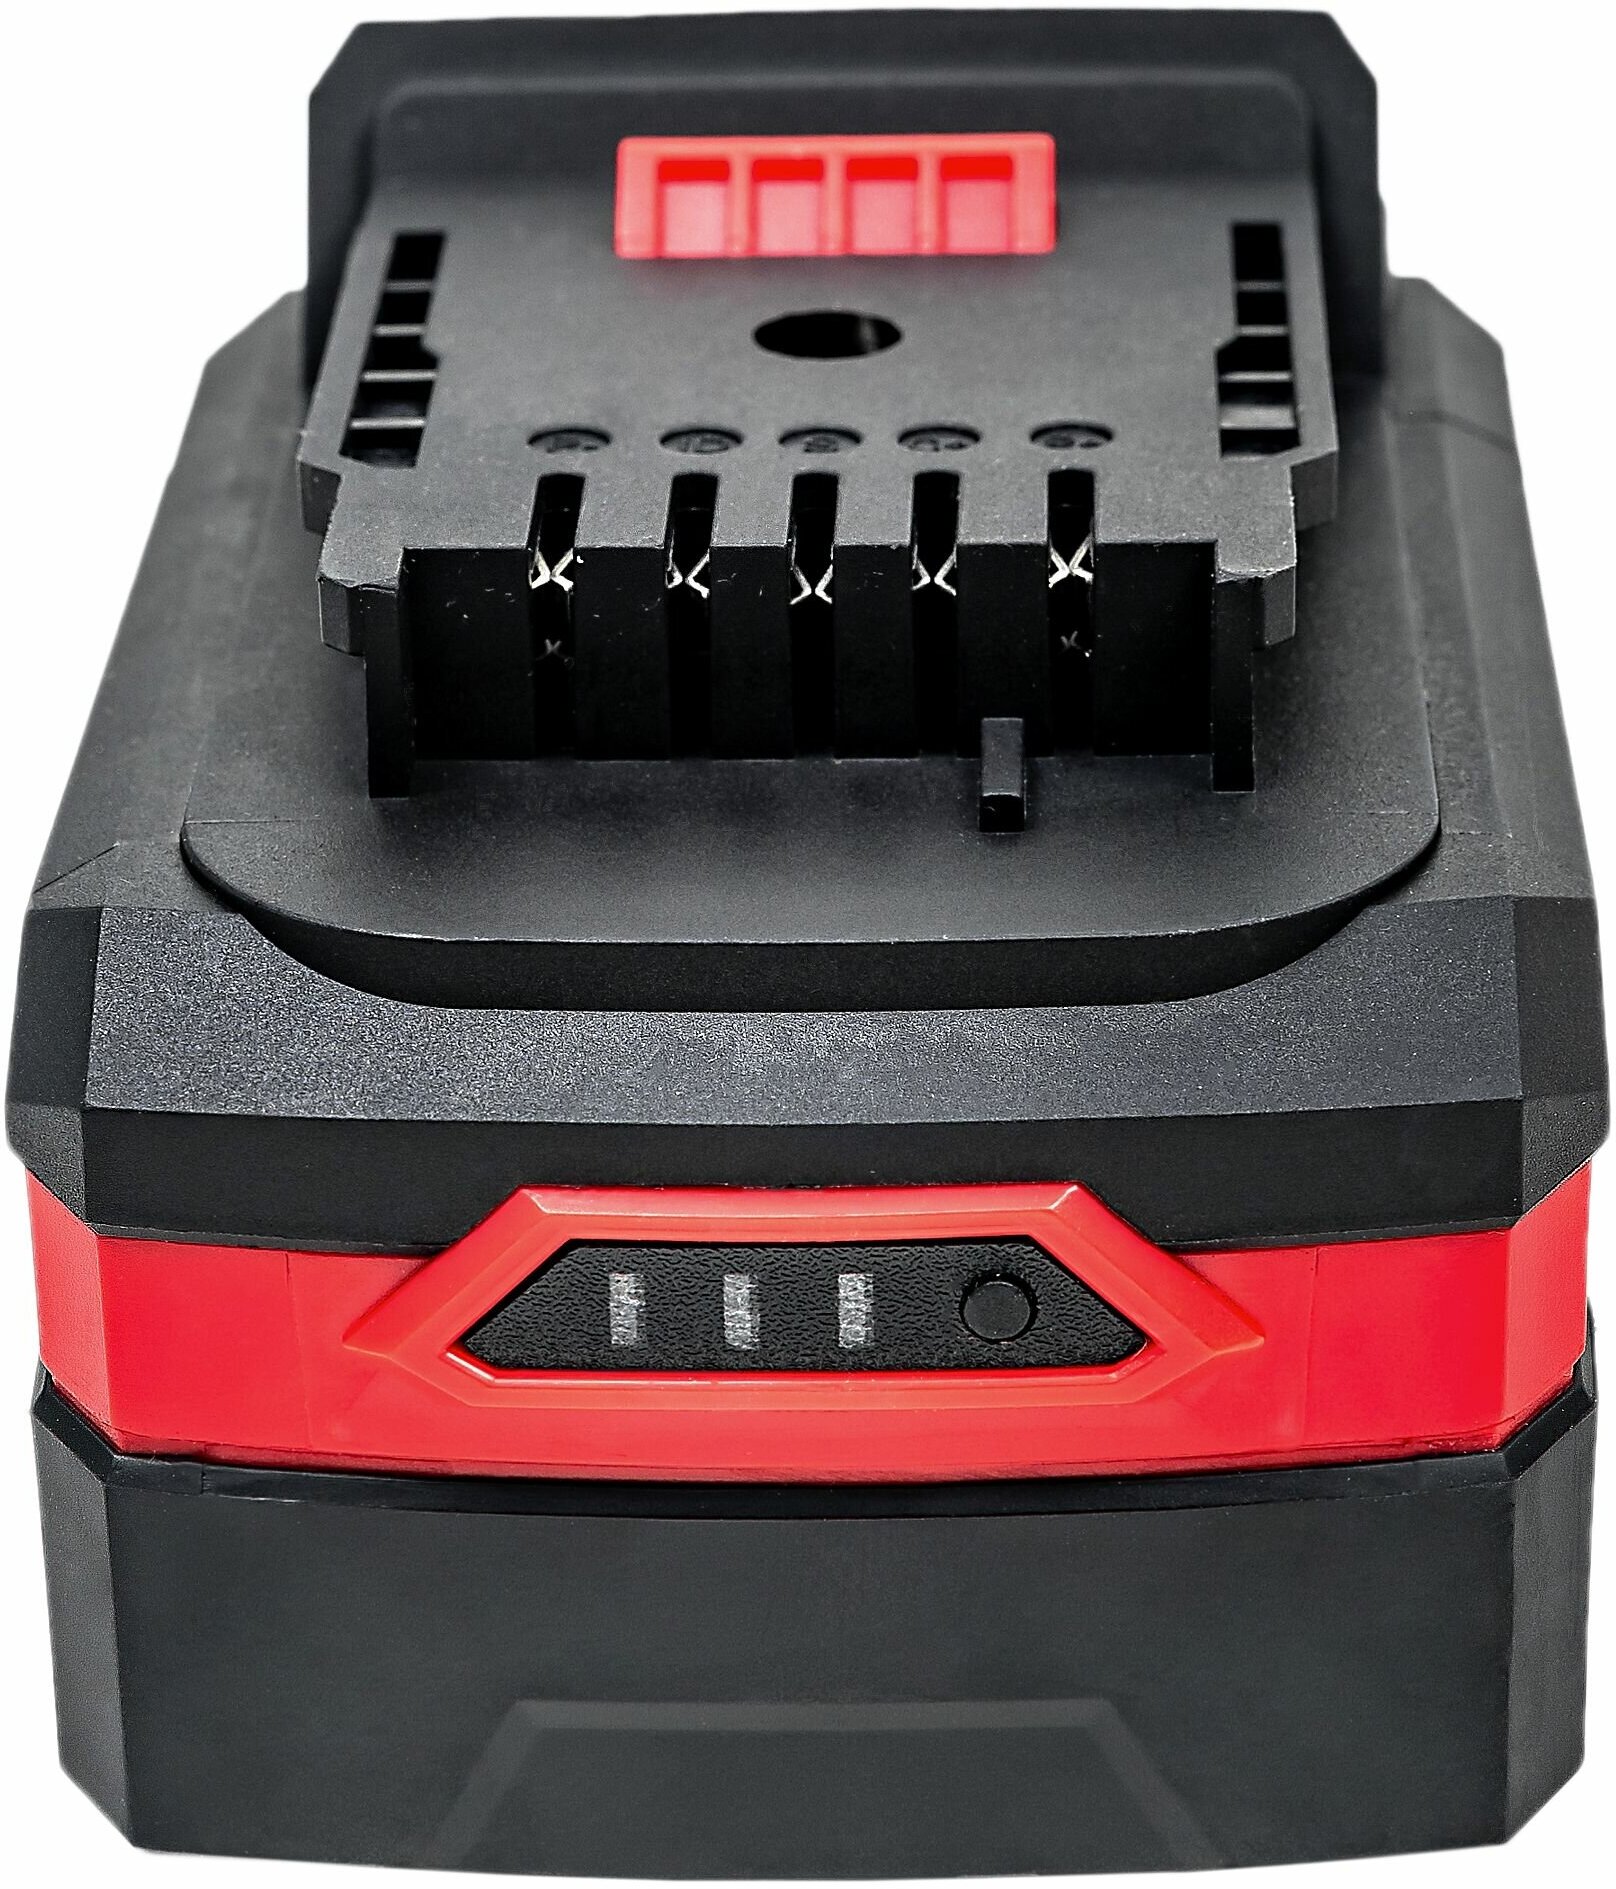 Аккумулятор OnePower P.I.T PH20-4.0 P. I. T. (20В, 4Ач, Li-Ion)